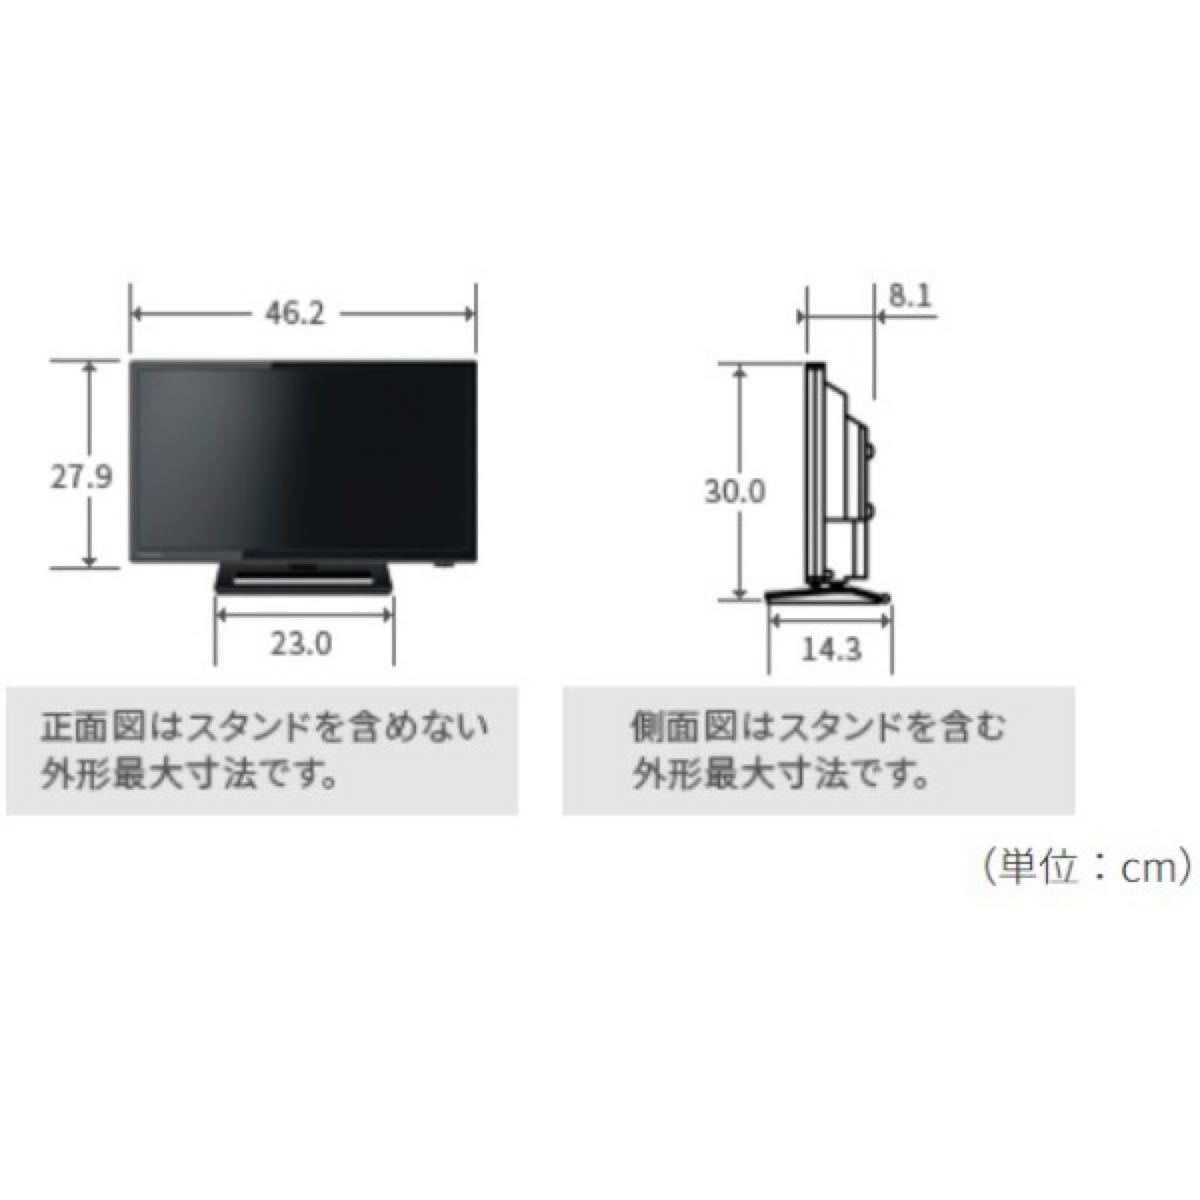 TOSHIBA 液晶テレビ REGZA(レグザ) 19S22 [19V型 /ハイビジョン